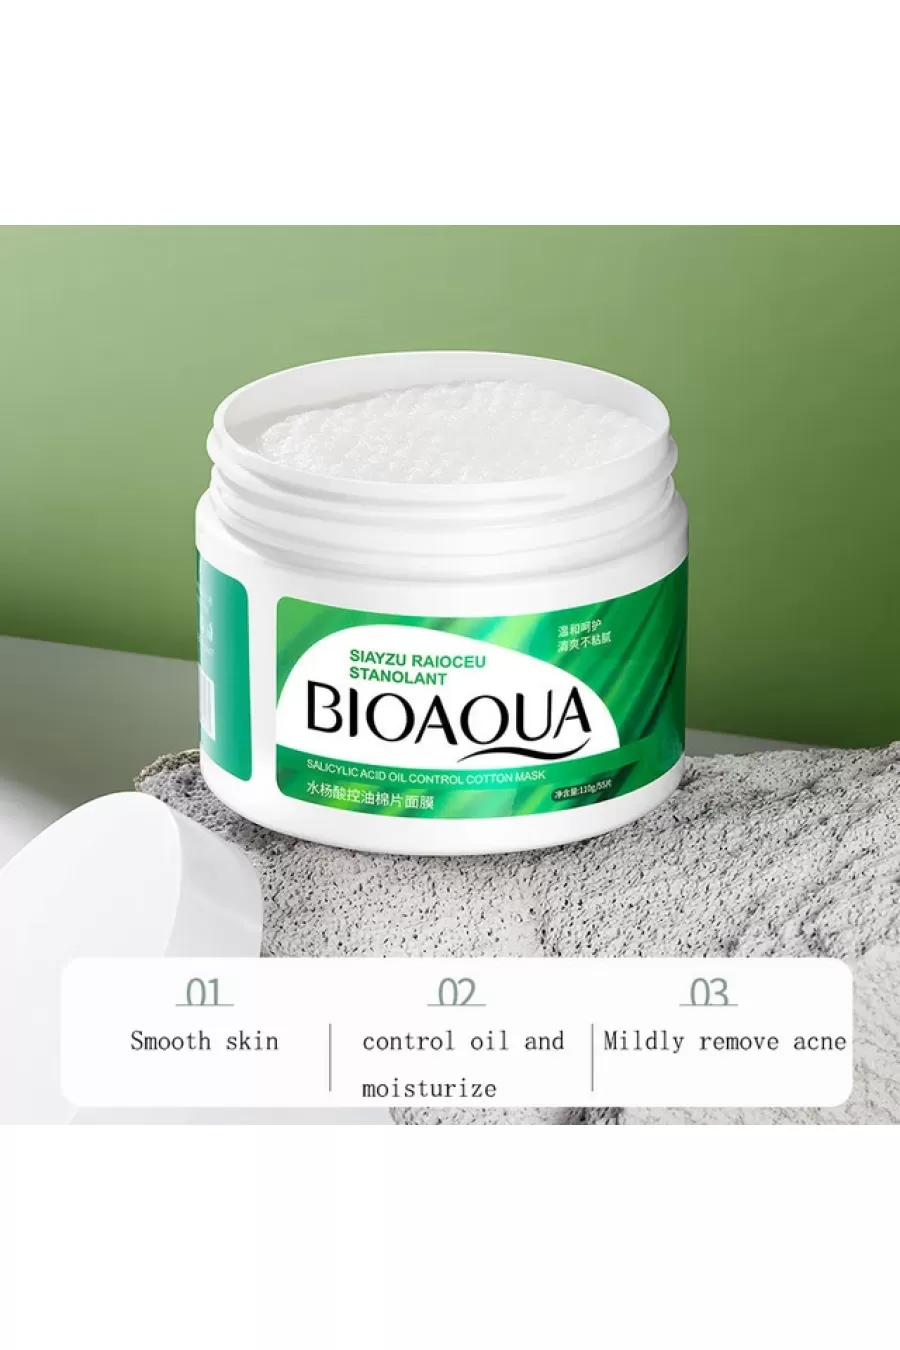 کنترل کننده چربی پوست روشن کننده پوست پاک سازی عمیق پوست بیوآکوآ BIOAQUA ماسک سالیسیلیک اسید